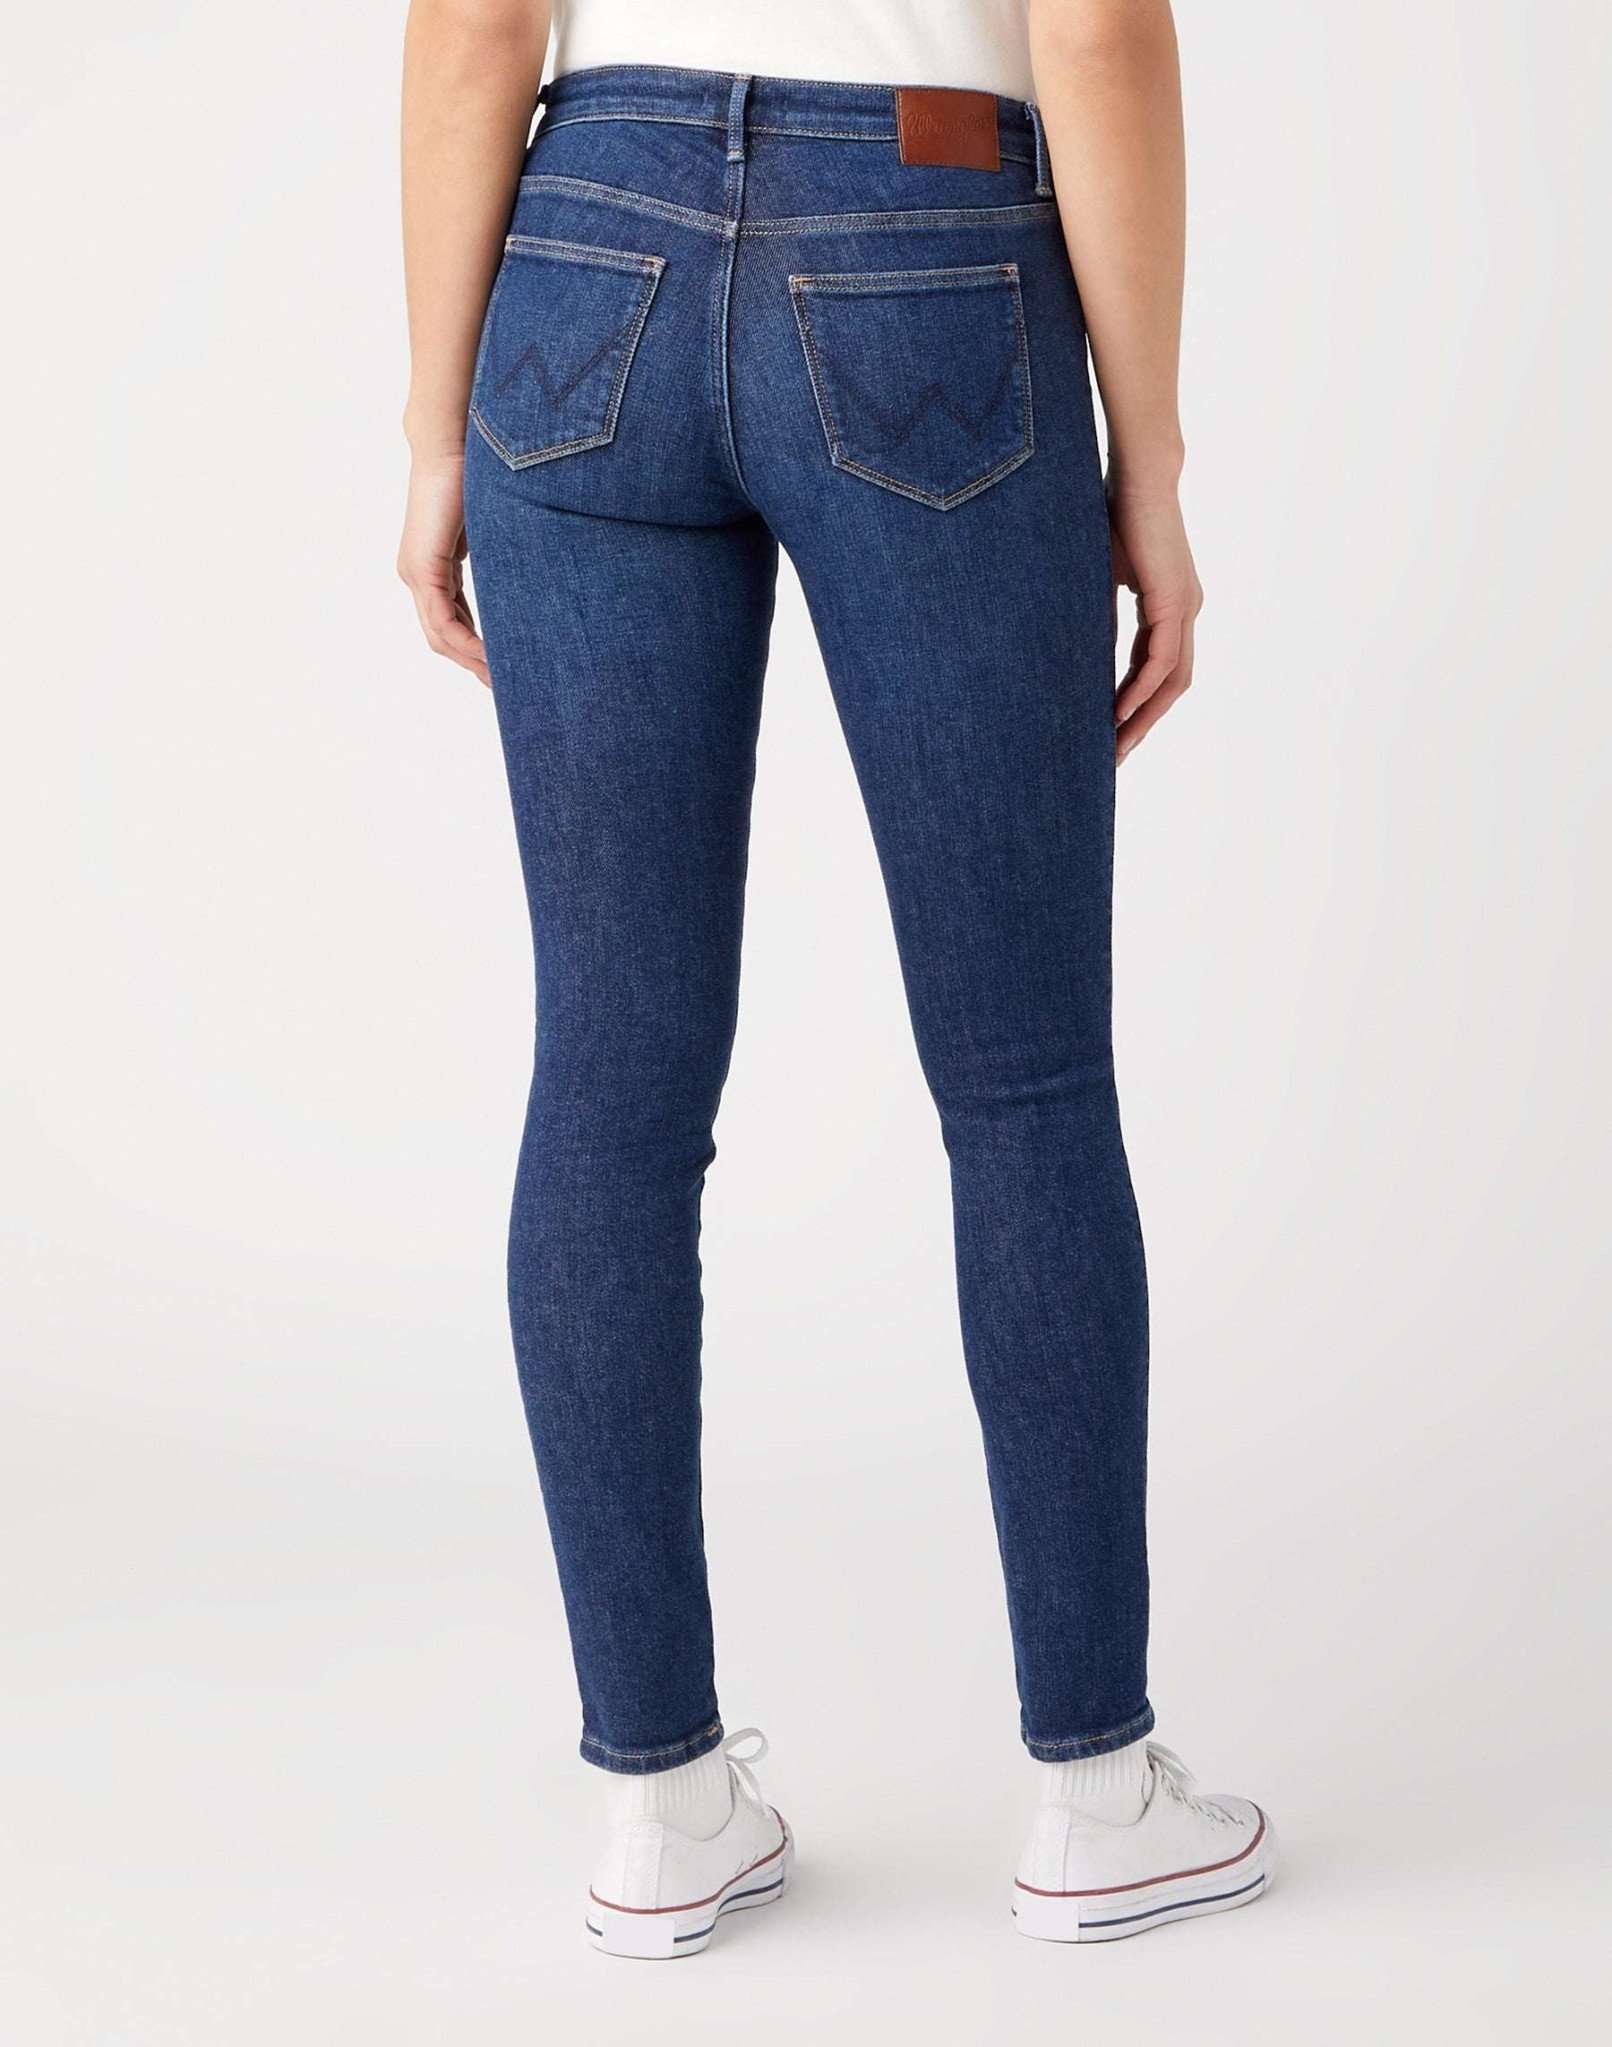 Skinny in Dora Jeans Wrangler   